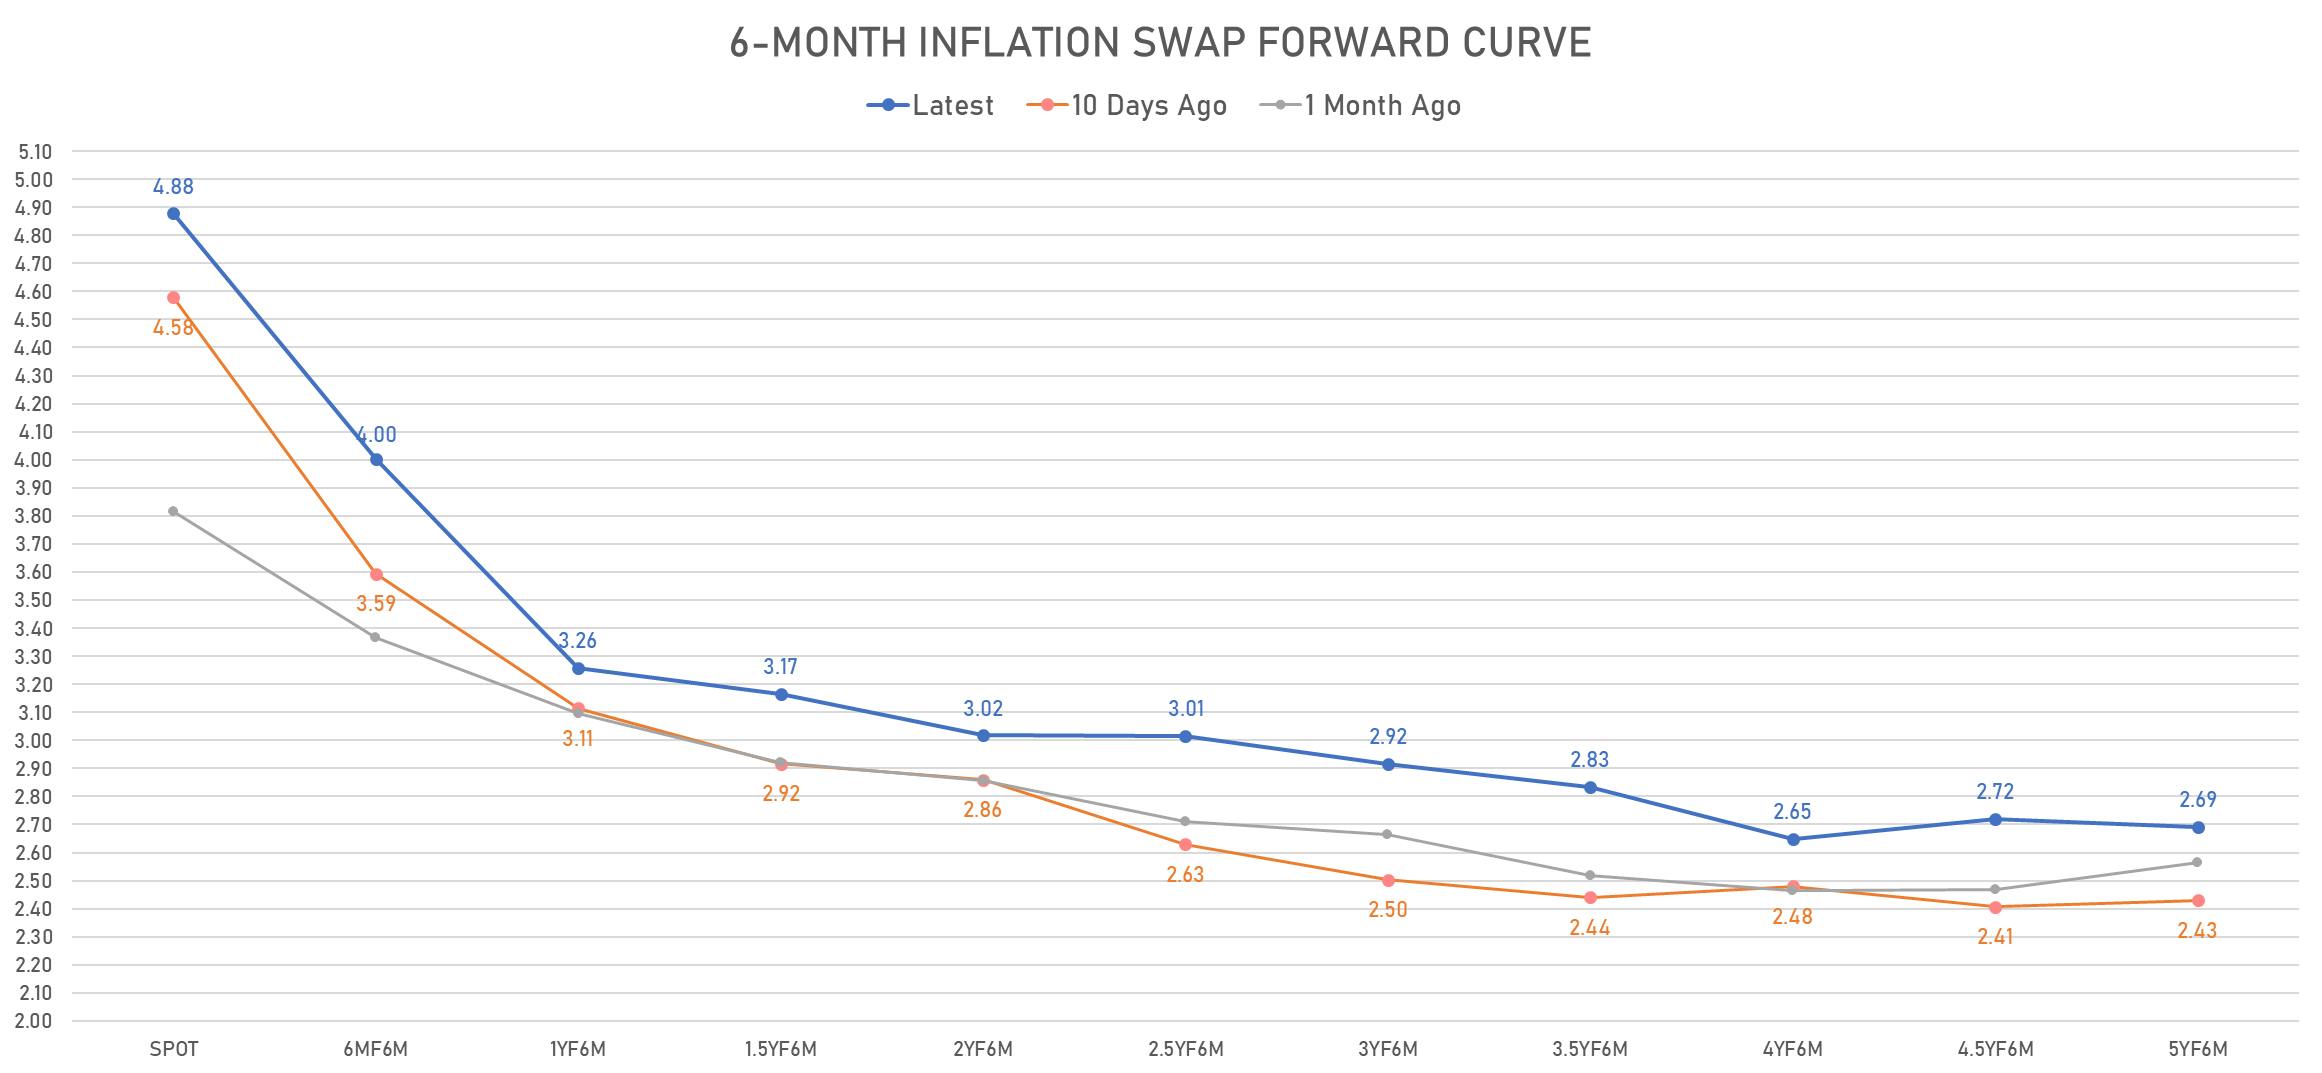 6-Month CPI Swap Forward Curve | Sources: phipost.com, Refinitiv data